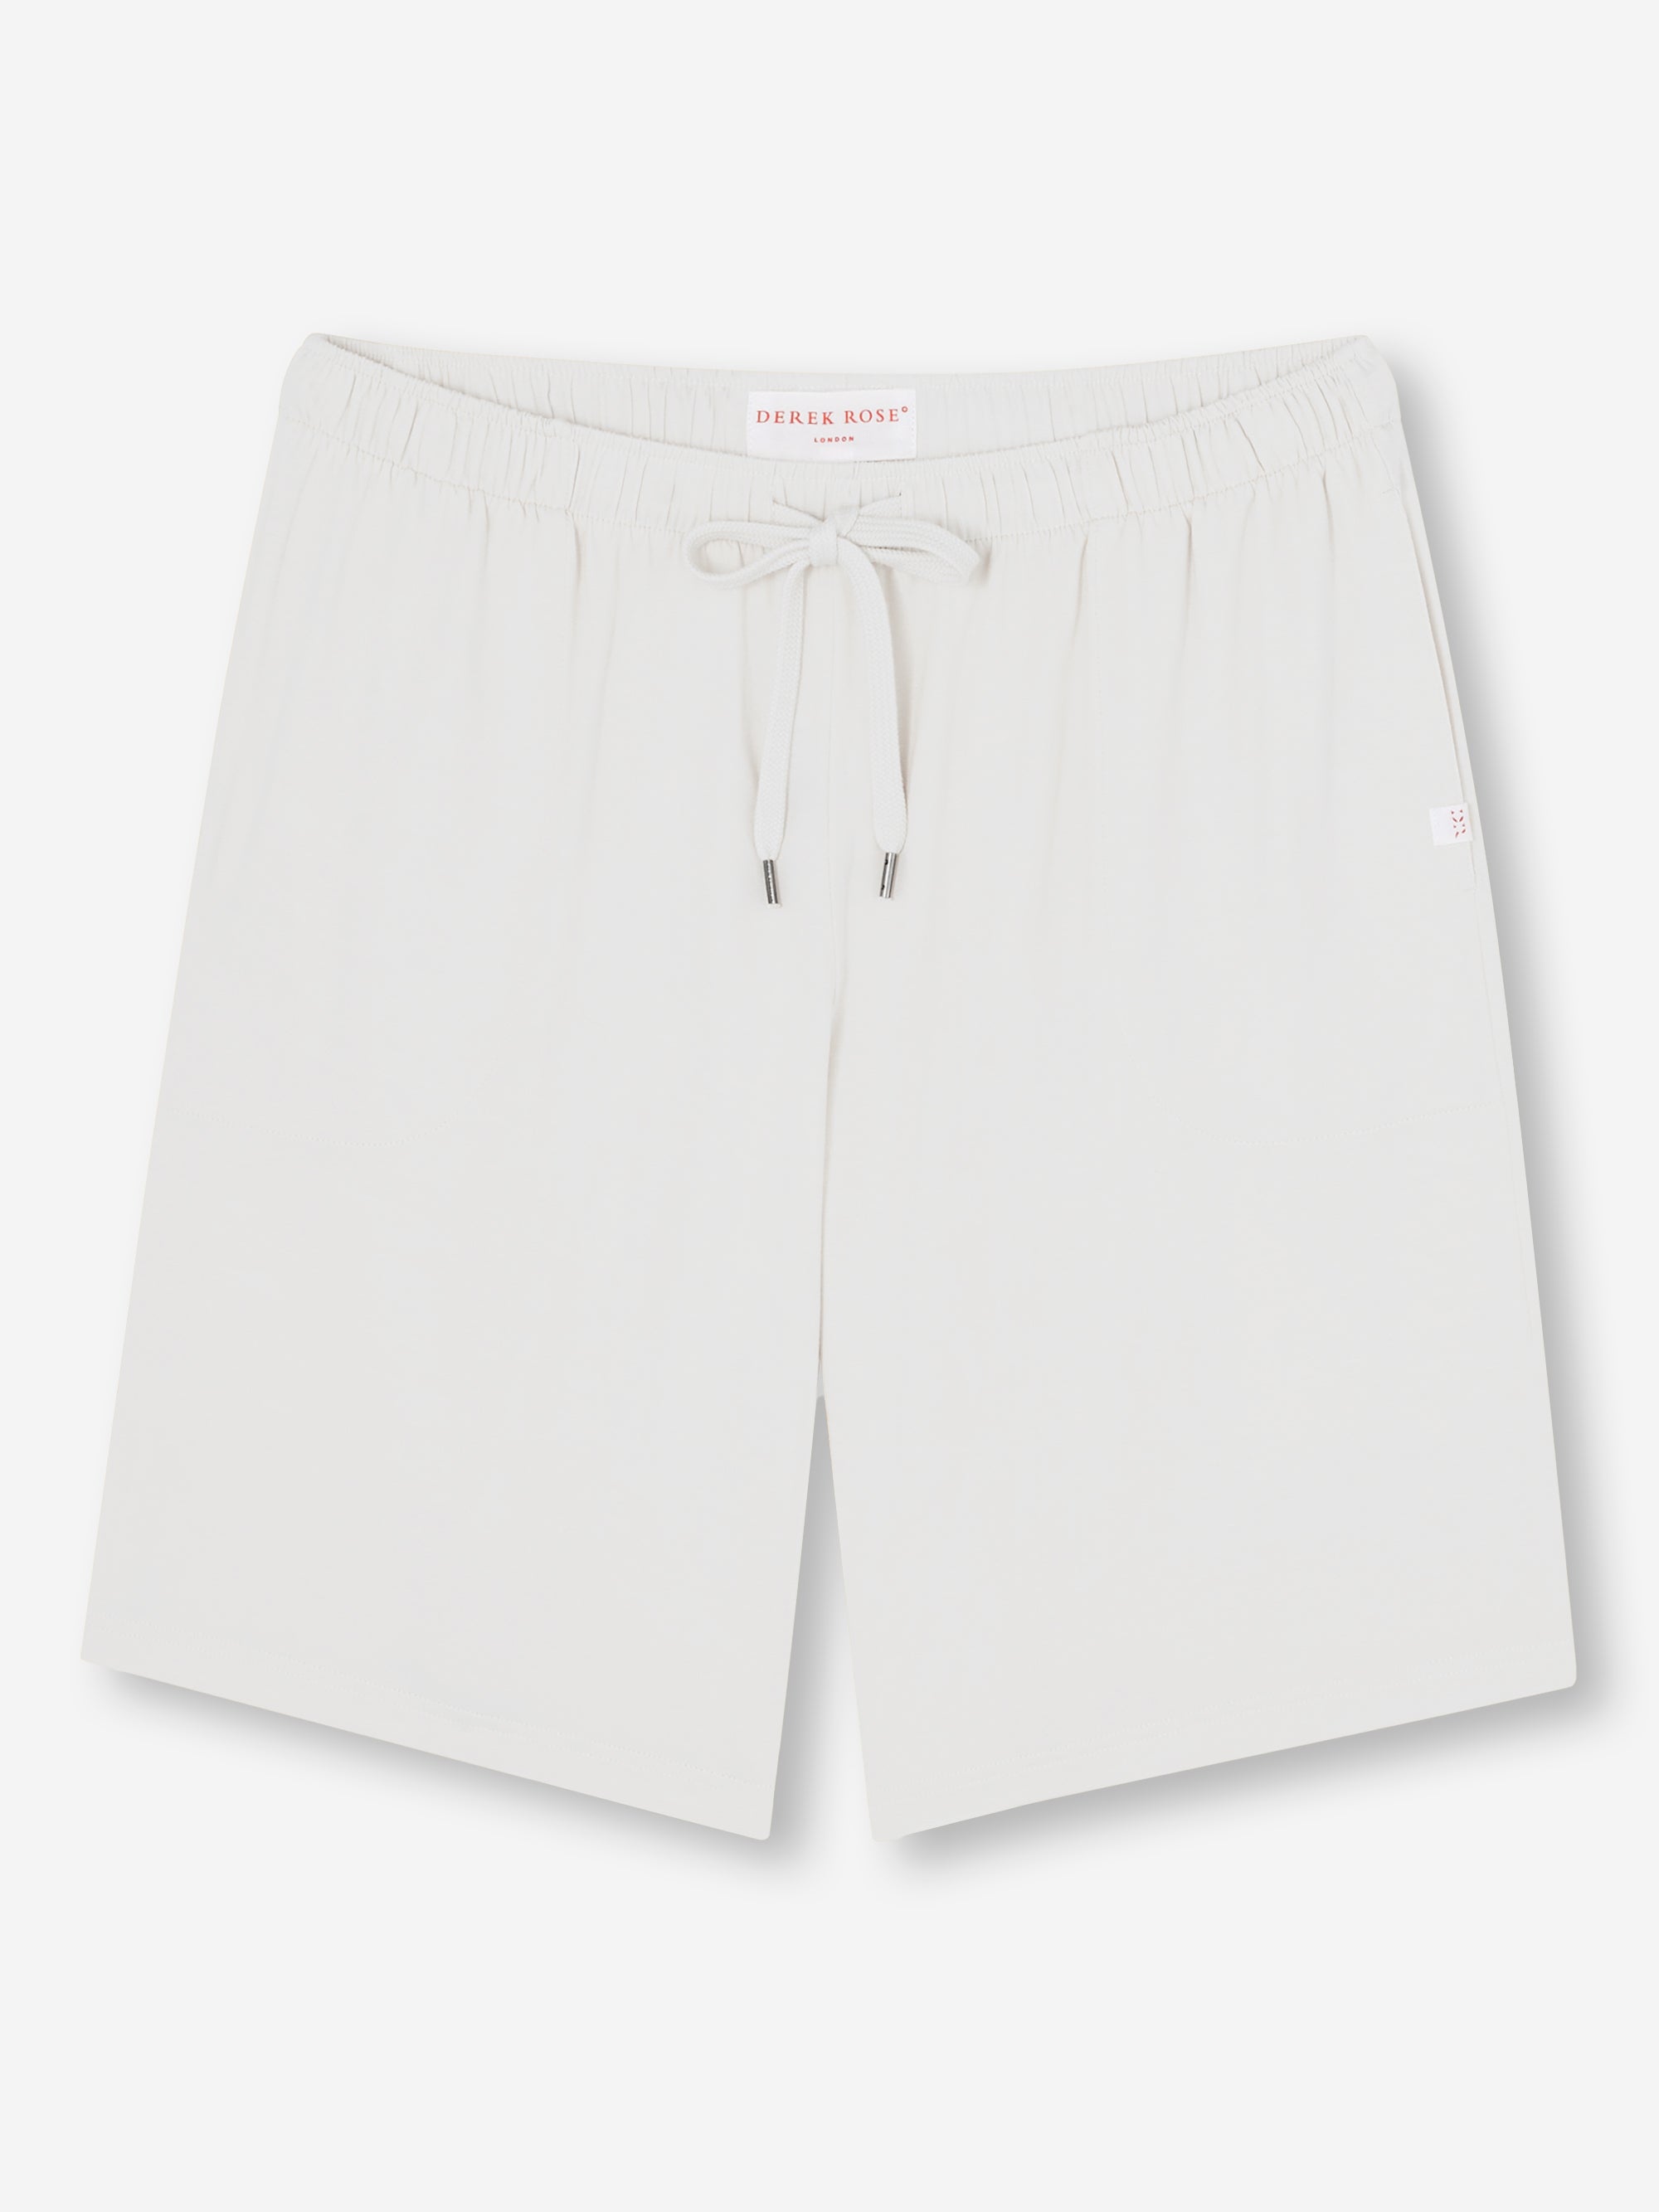 Men's Lounge Shorts Basel Micro Modal Stretch White